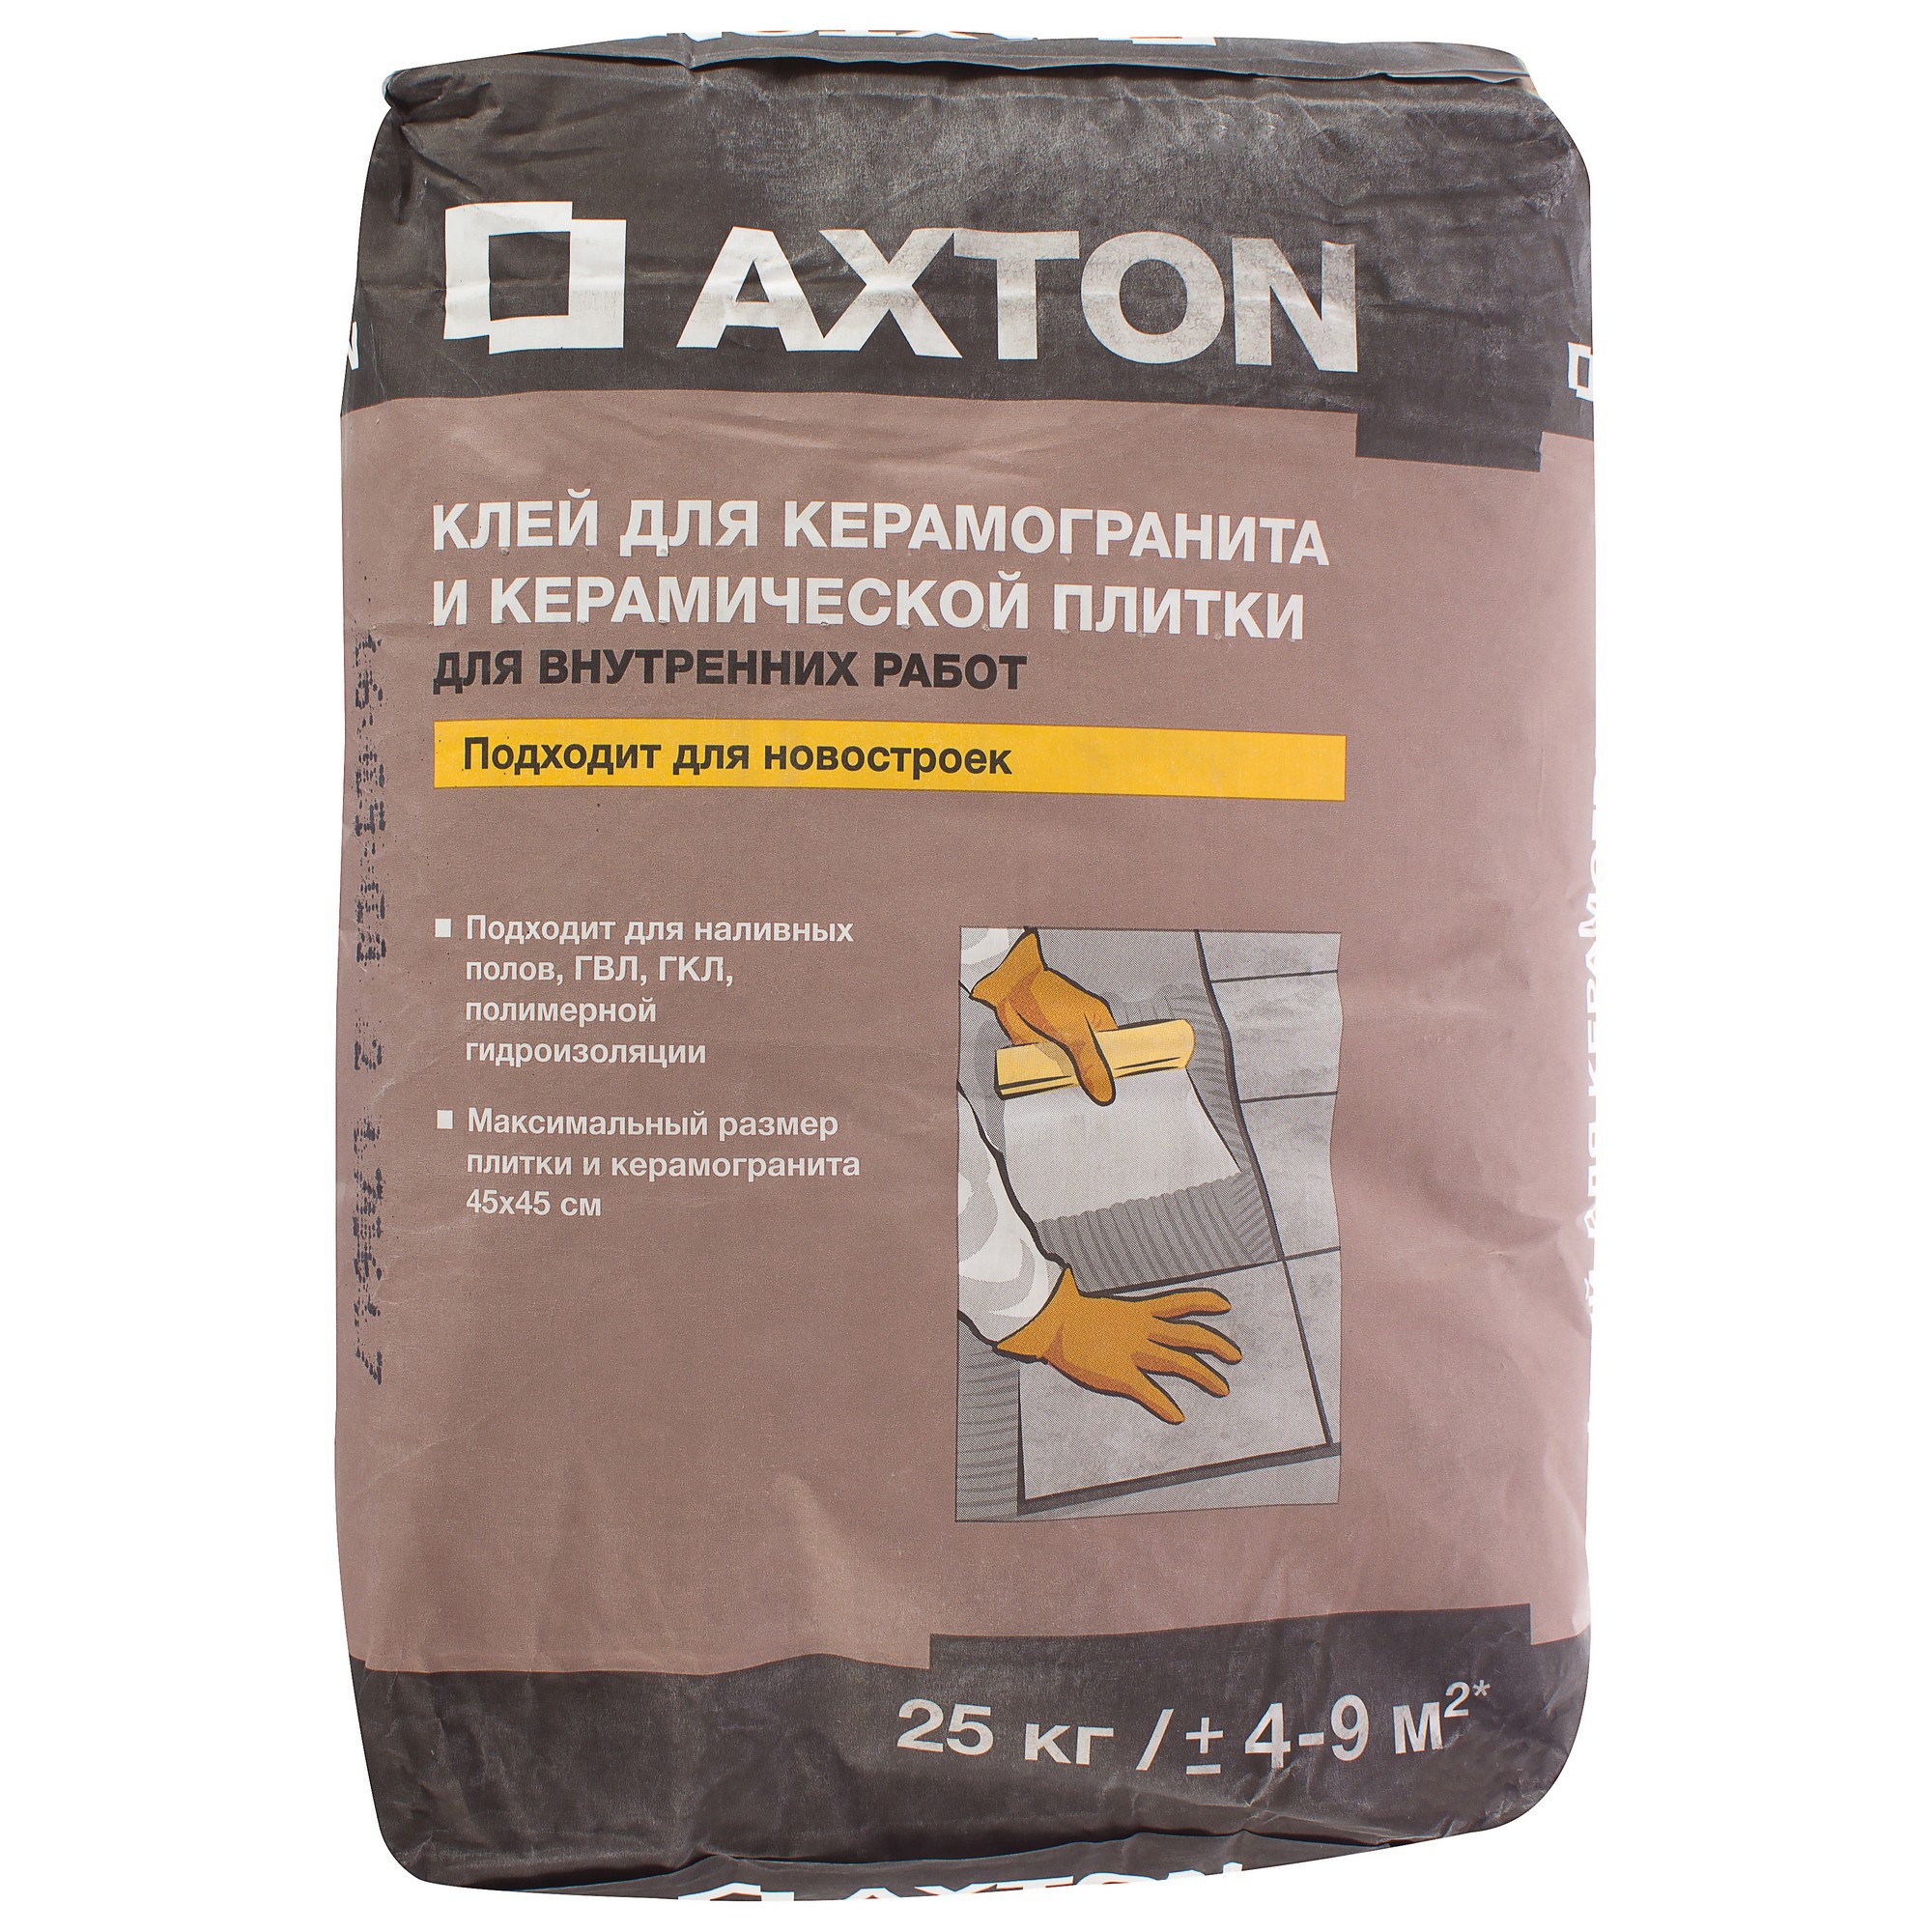 Плиточный клей Axton для керамогранита